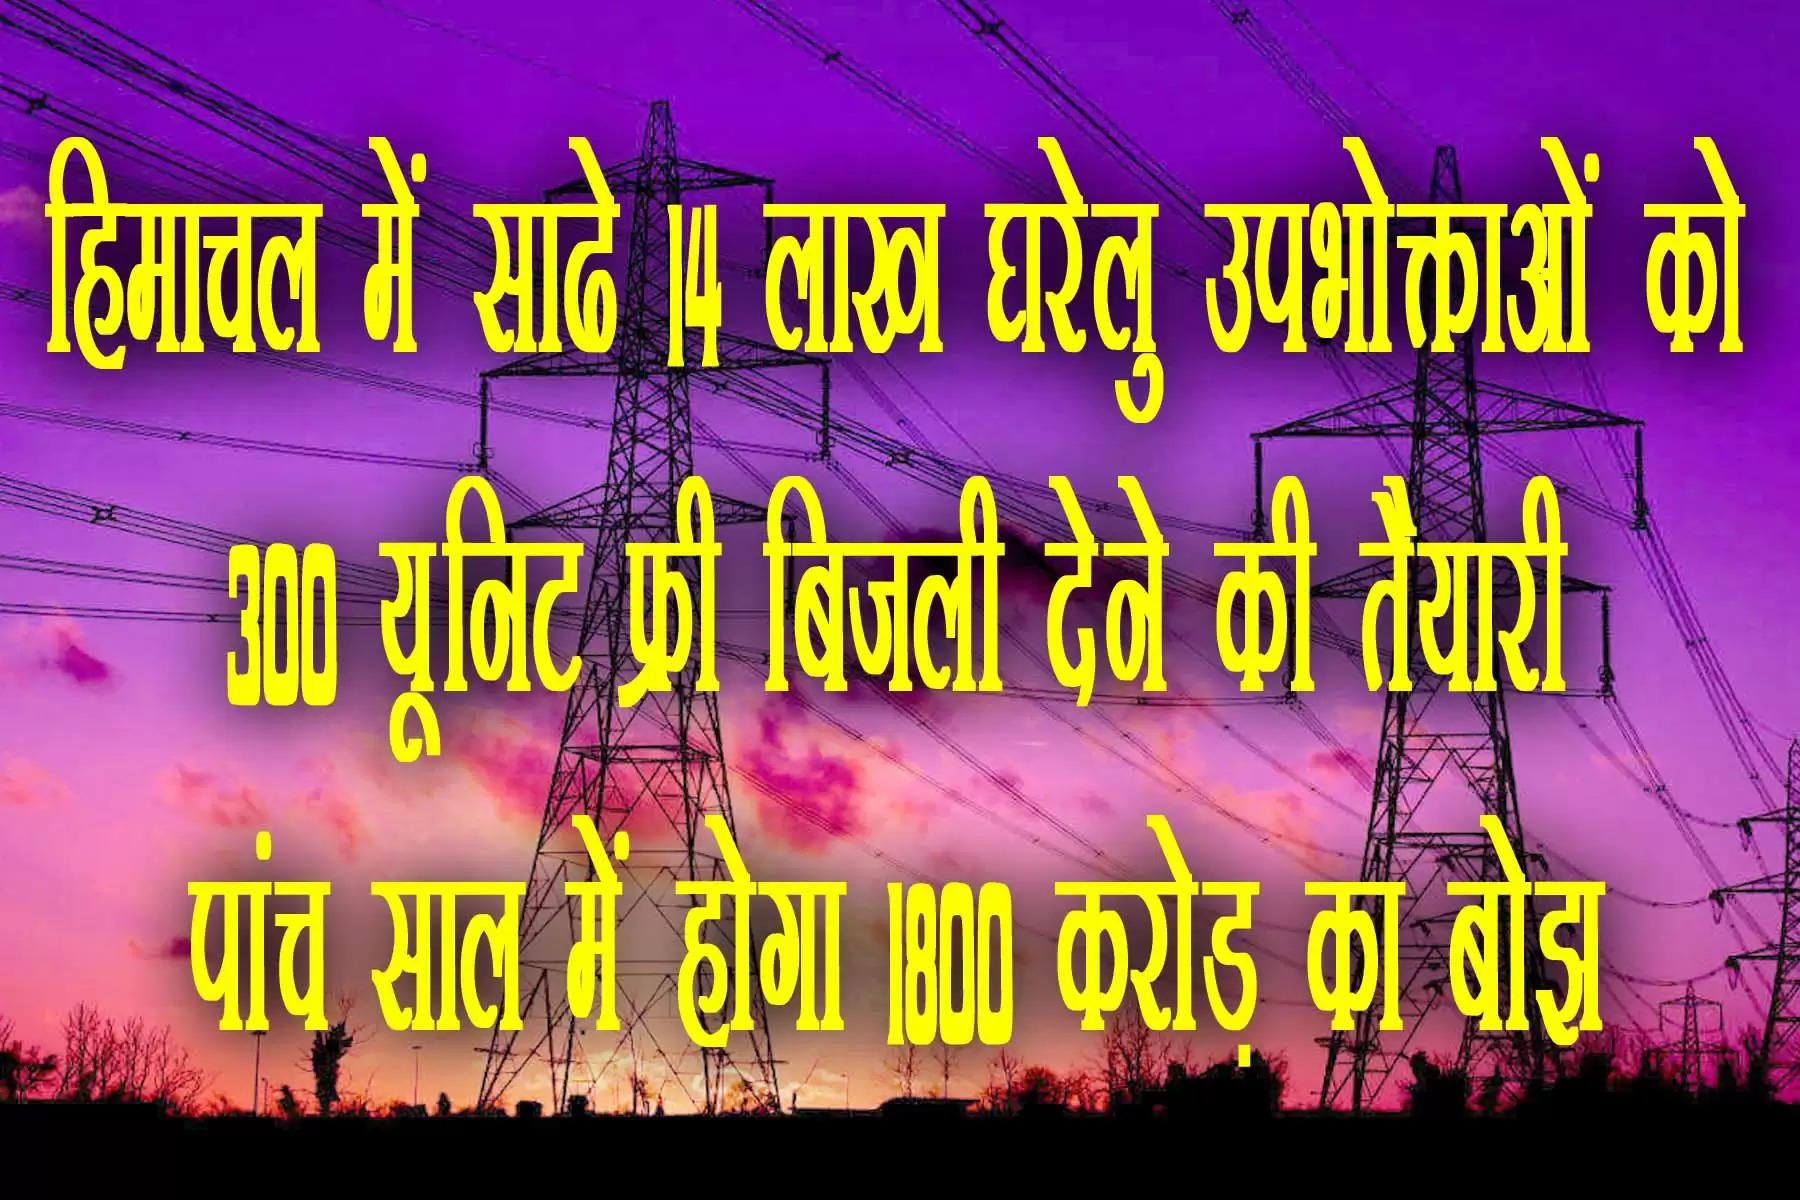 free electricity himachal  हिमाचल सरकार ने प्रदेश में लोगों को 300 यूनिट फ्री बिजली देने की तैयारी शुरू कर दी है। सीएम सुखविंद्र सिंह सुक्खू बजट में इसकी घोषणा कर सकते हैं। सरकार के इस फैसले से हिमाचल में साढ़े 14 लाख बिजली के घरेलू उपभोक्ताओं को सीधा लाभ पहुंचेगा। प्रदेश कांग्रेस कमेटी की 10 गारंटी में से 300 यूनिट फ्री बिजली देने की गारंटी भी एक है। इसका लोग बेसब्री से इंतजार कर रहे हैं।